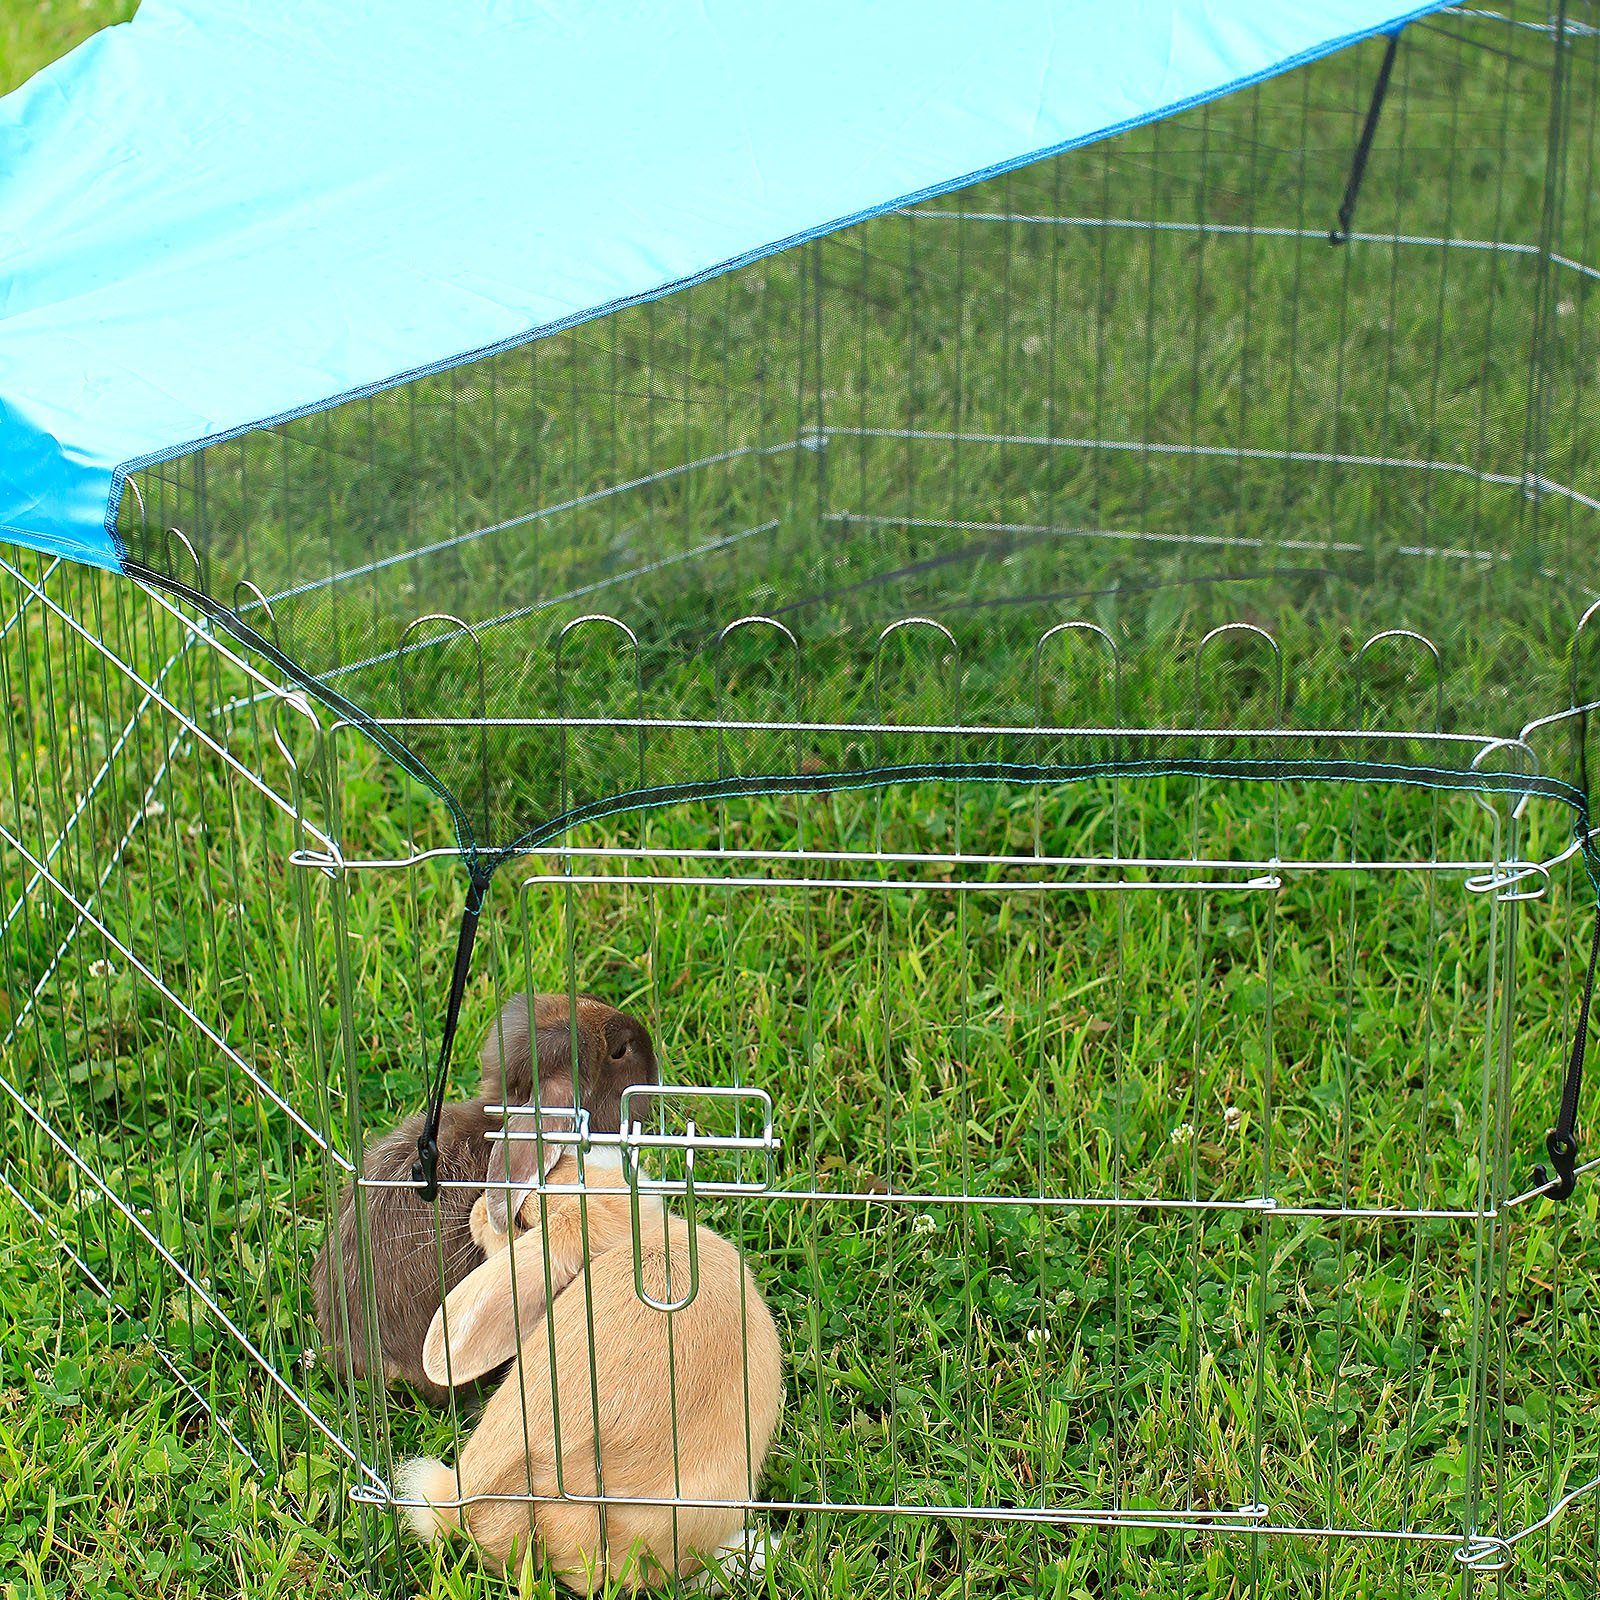 lionto Freigehege Freilaufgehege aus Metall für Kleintiere und Nager, mit Schutznetz, 8 Elemente je 59 cm x 58 cm